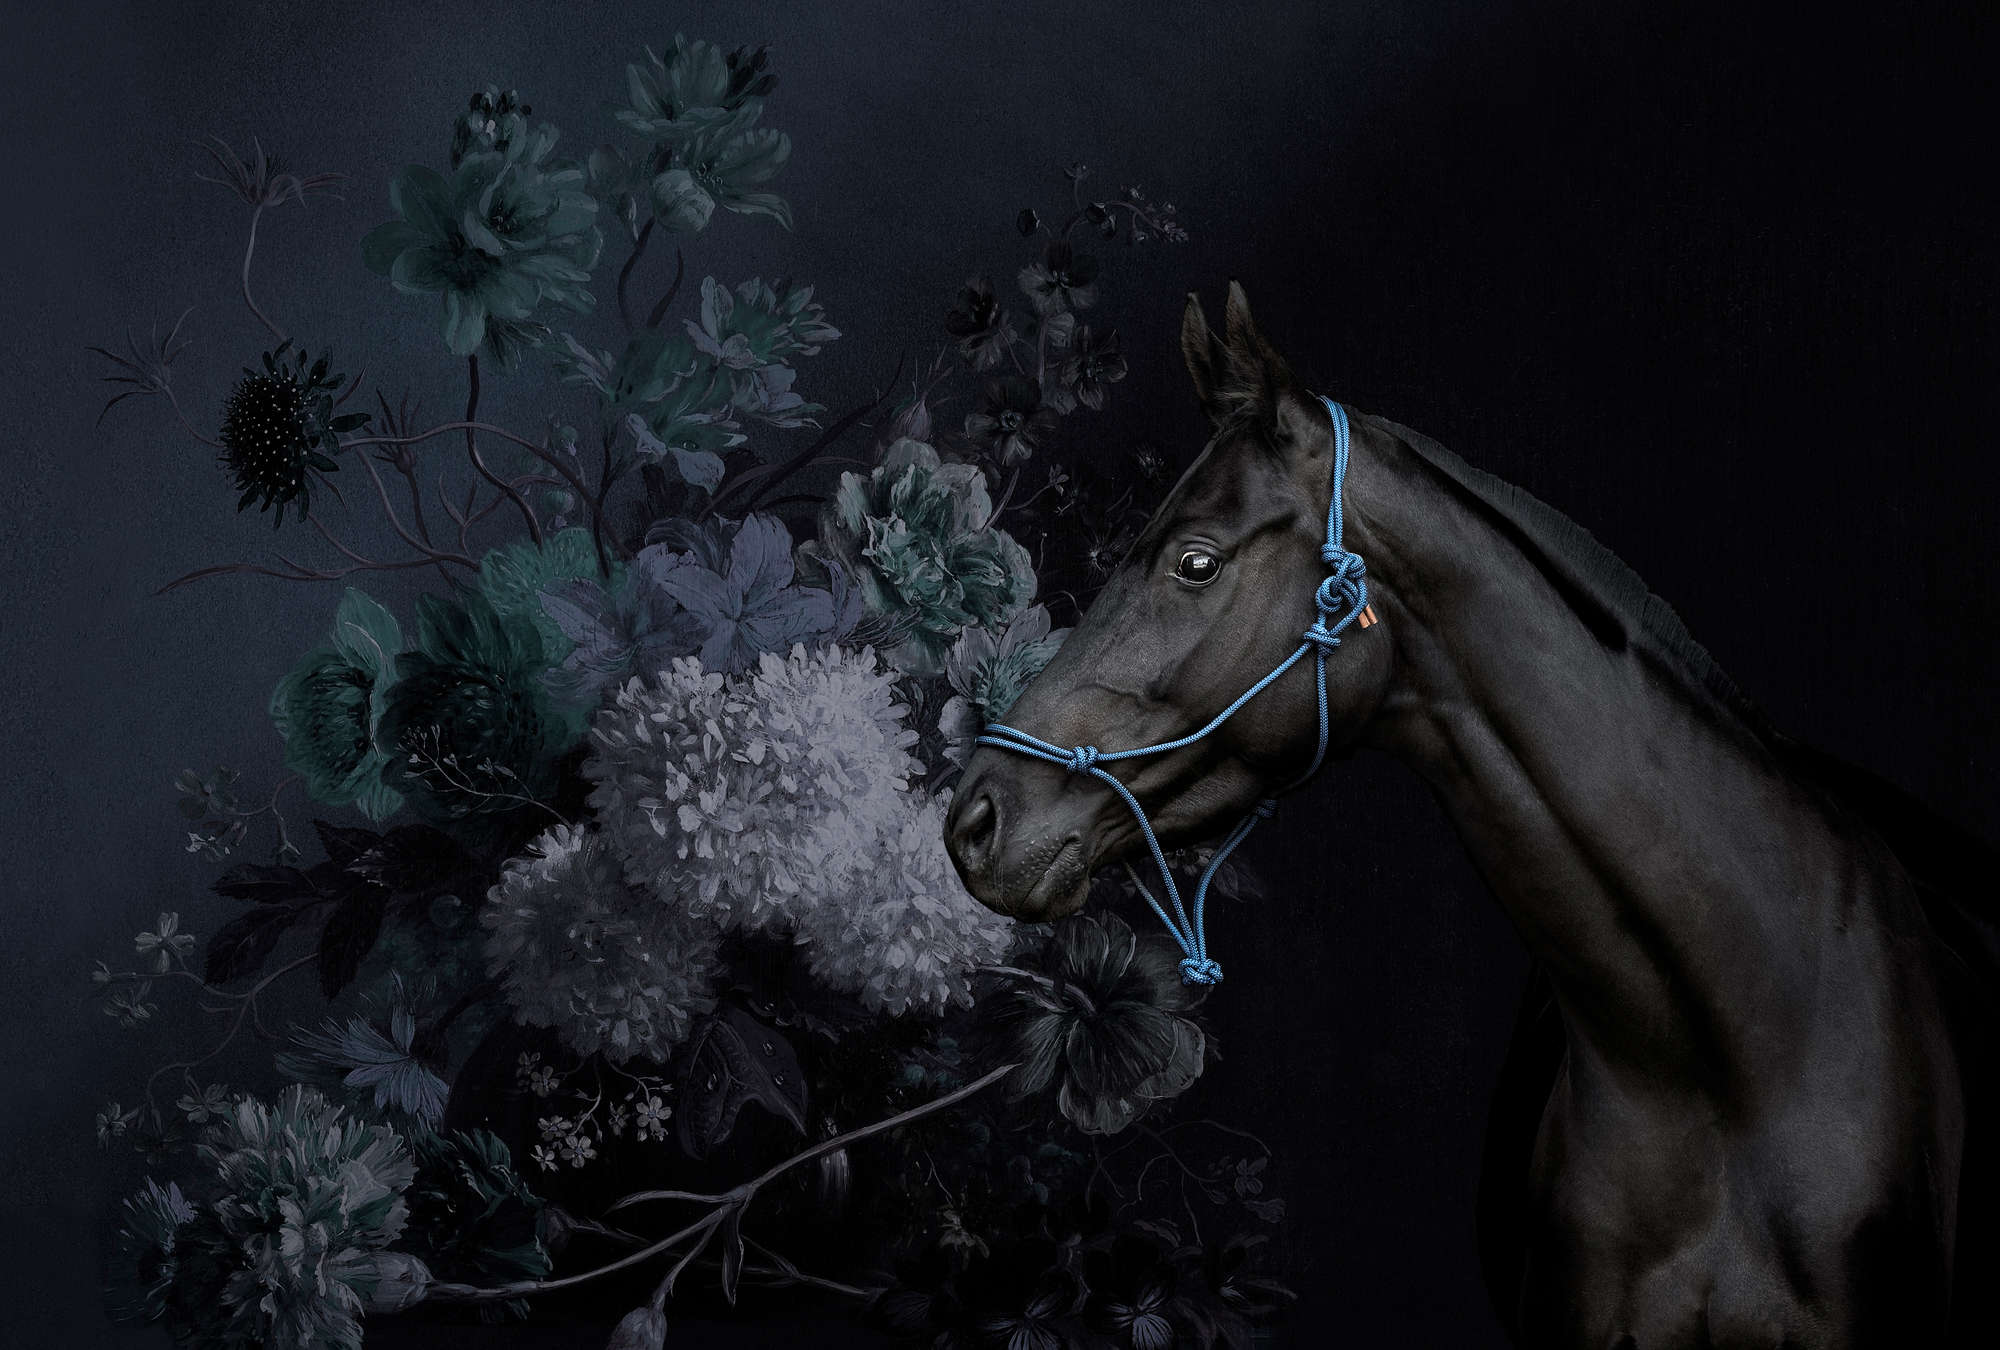             Mural estilo retrato de caballo con flores
        